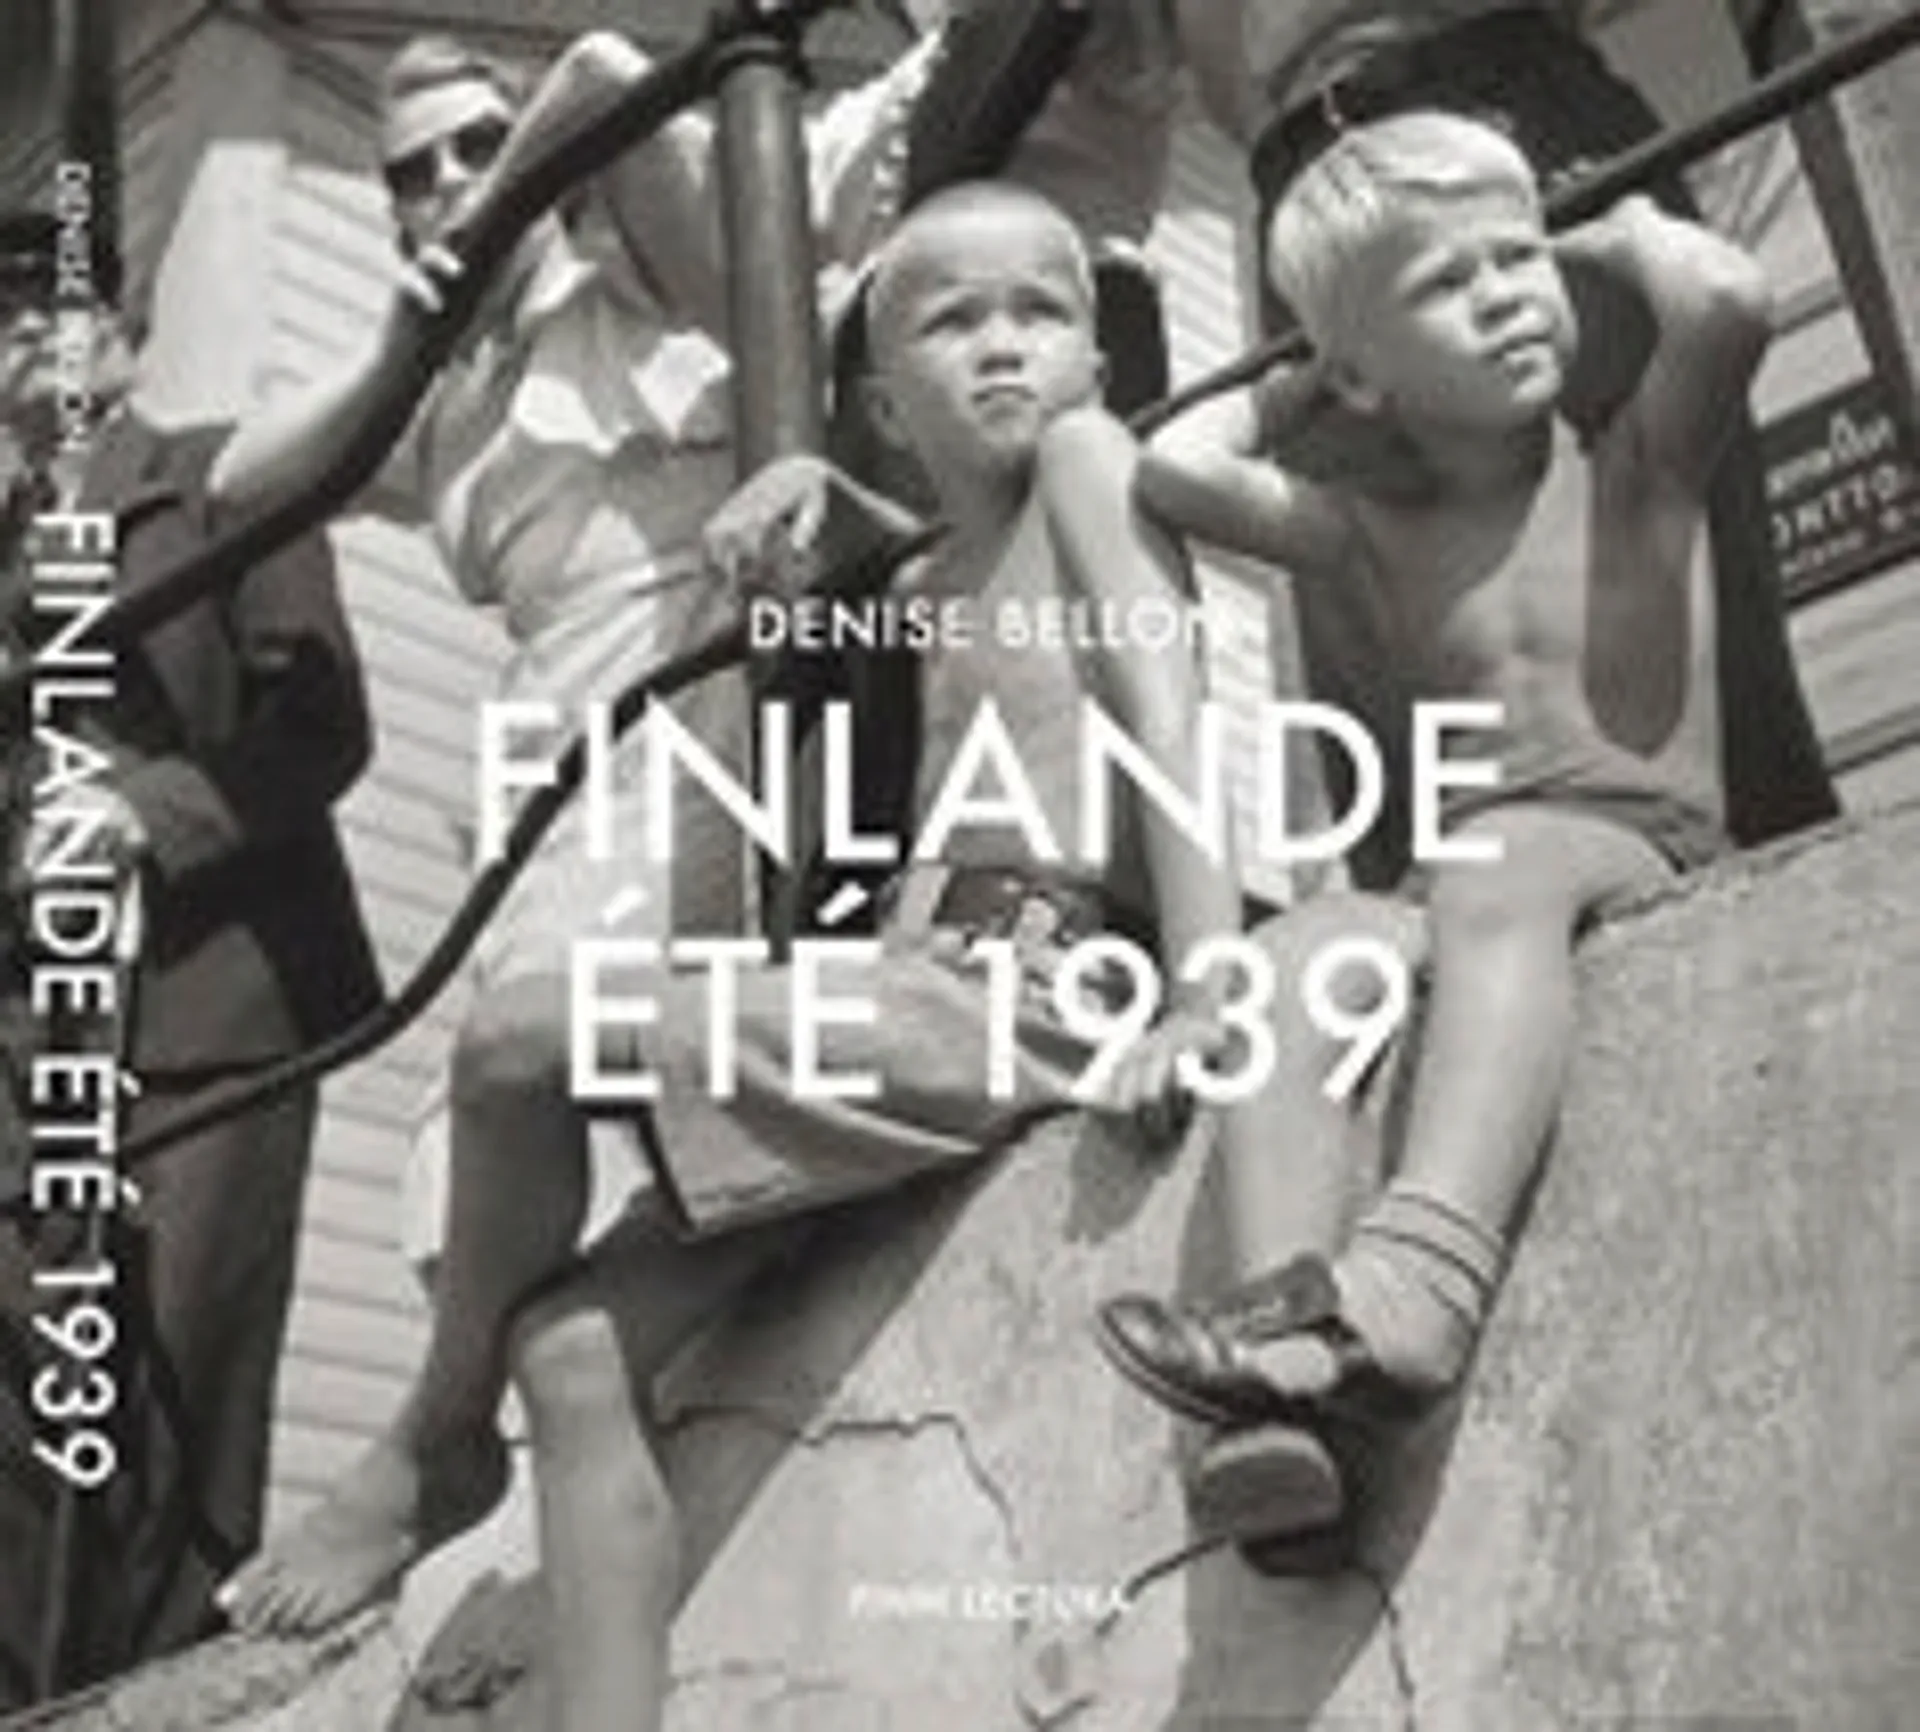 Finlande, ete 1939